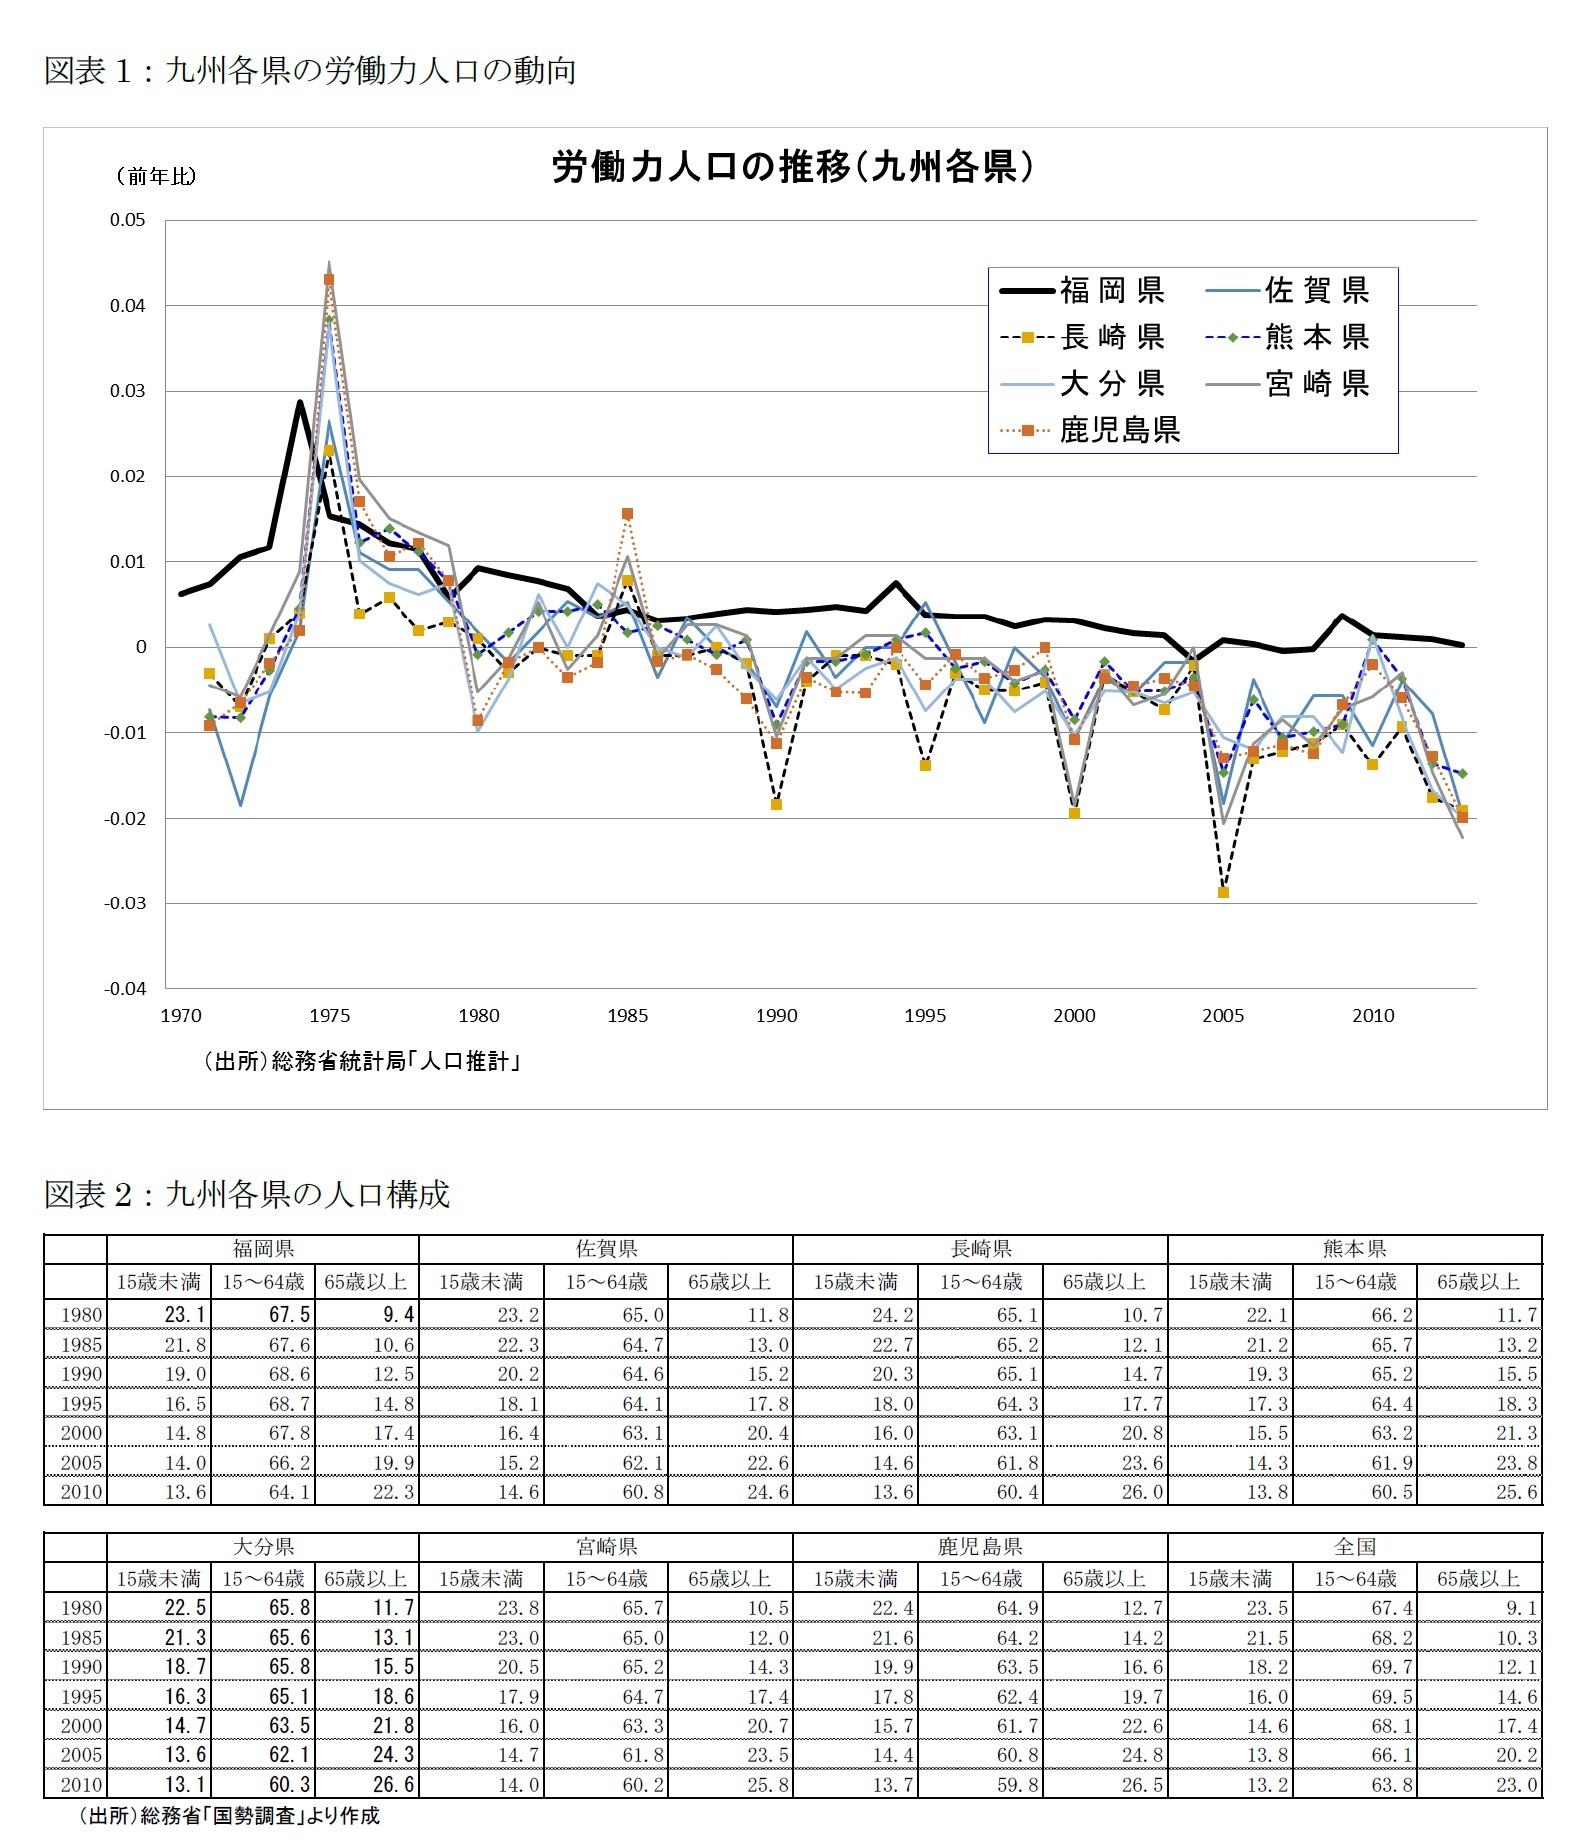 図表1：九州各県の労働力人口の動向/図表2：九州各県の人口構成